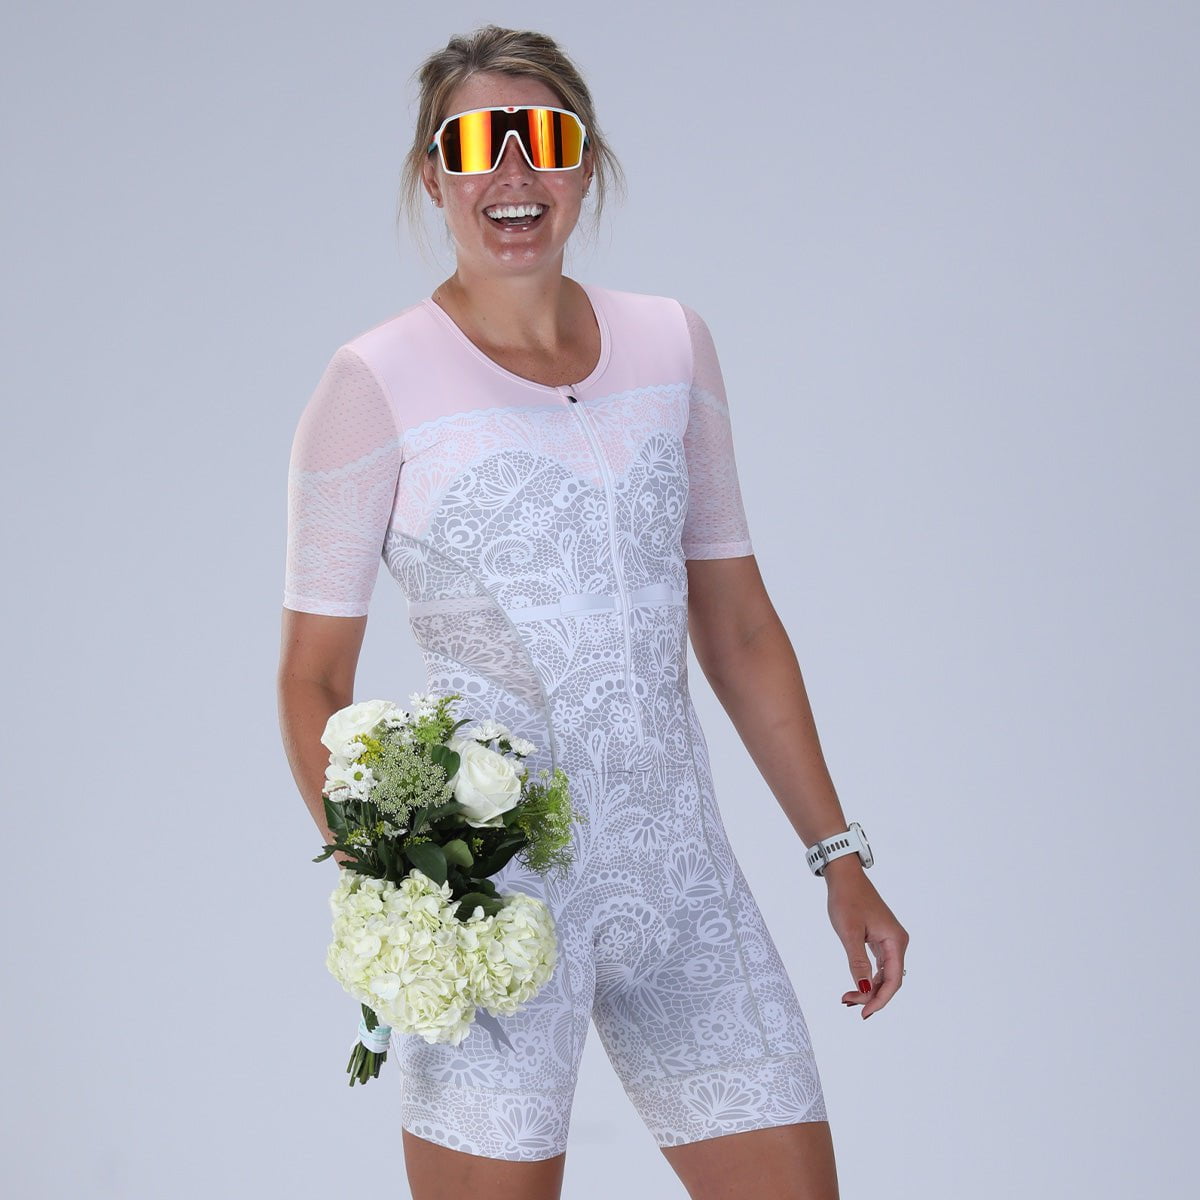 Zoot Sports TRI RACESUITS Women's Ltd Tri Aero Fz Racesuit - Bride